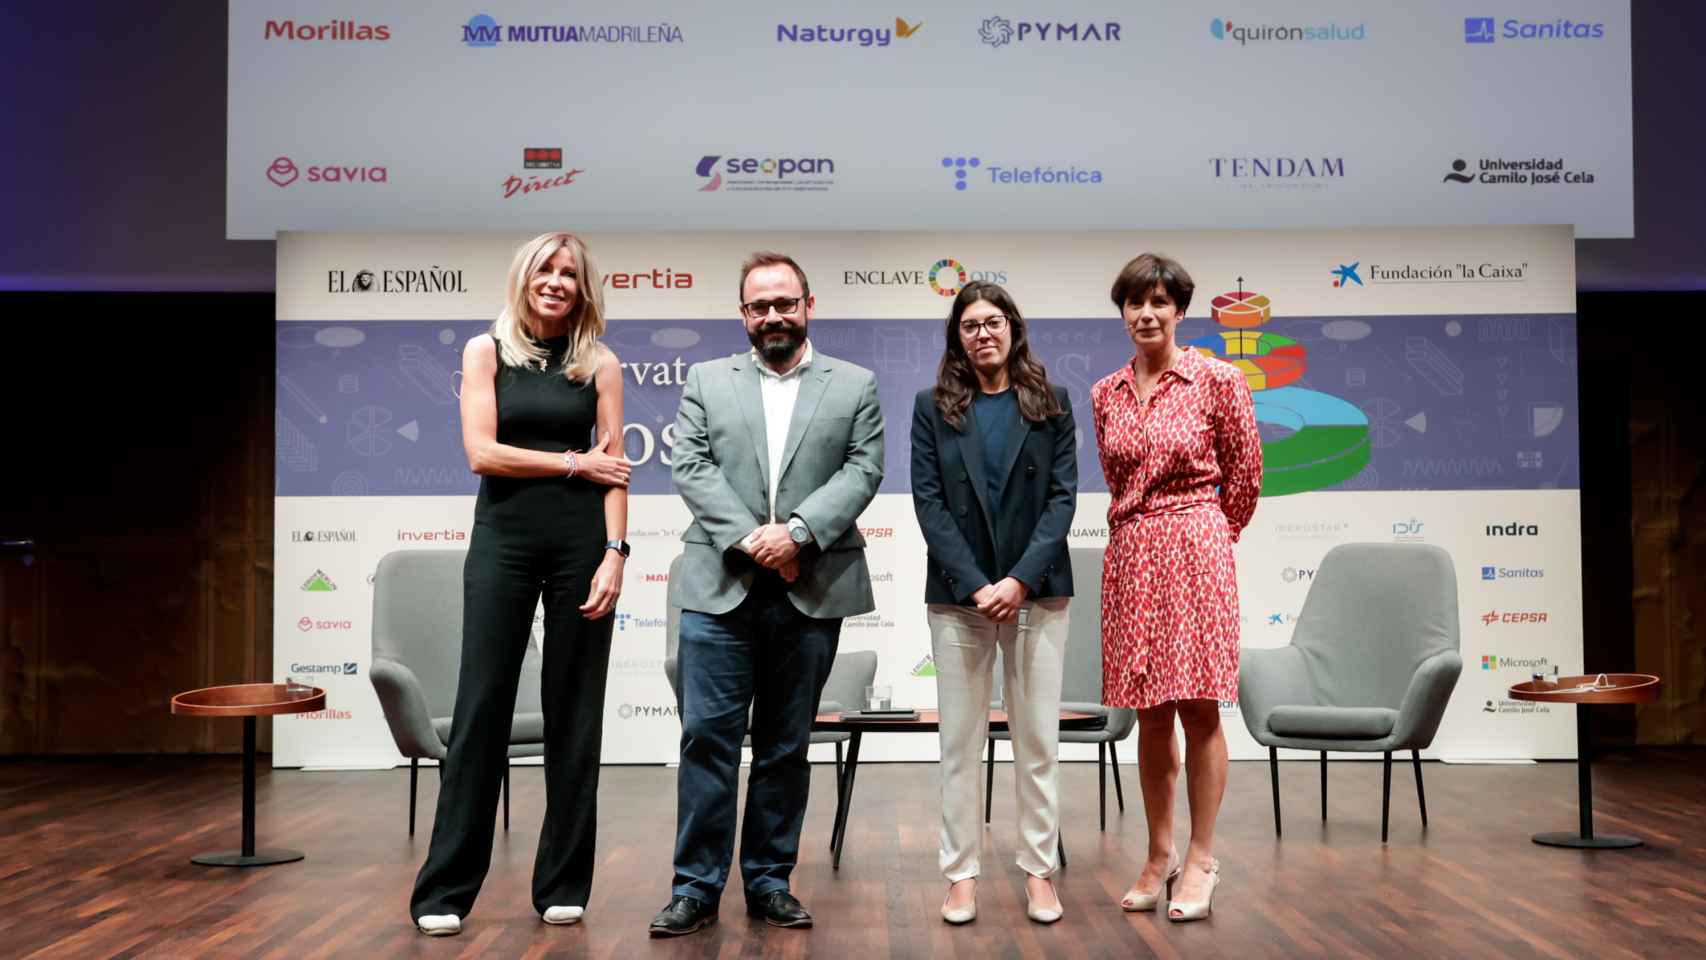 De izquierda a derecha, Margarita Álvarez, Eduardo Ortega (El Español-Invertia), Sara López y Cristina Manzano.